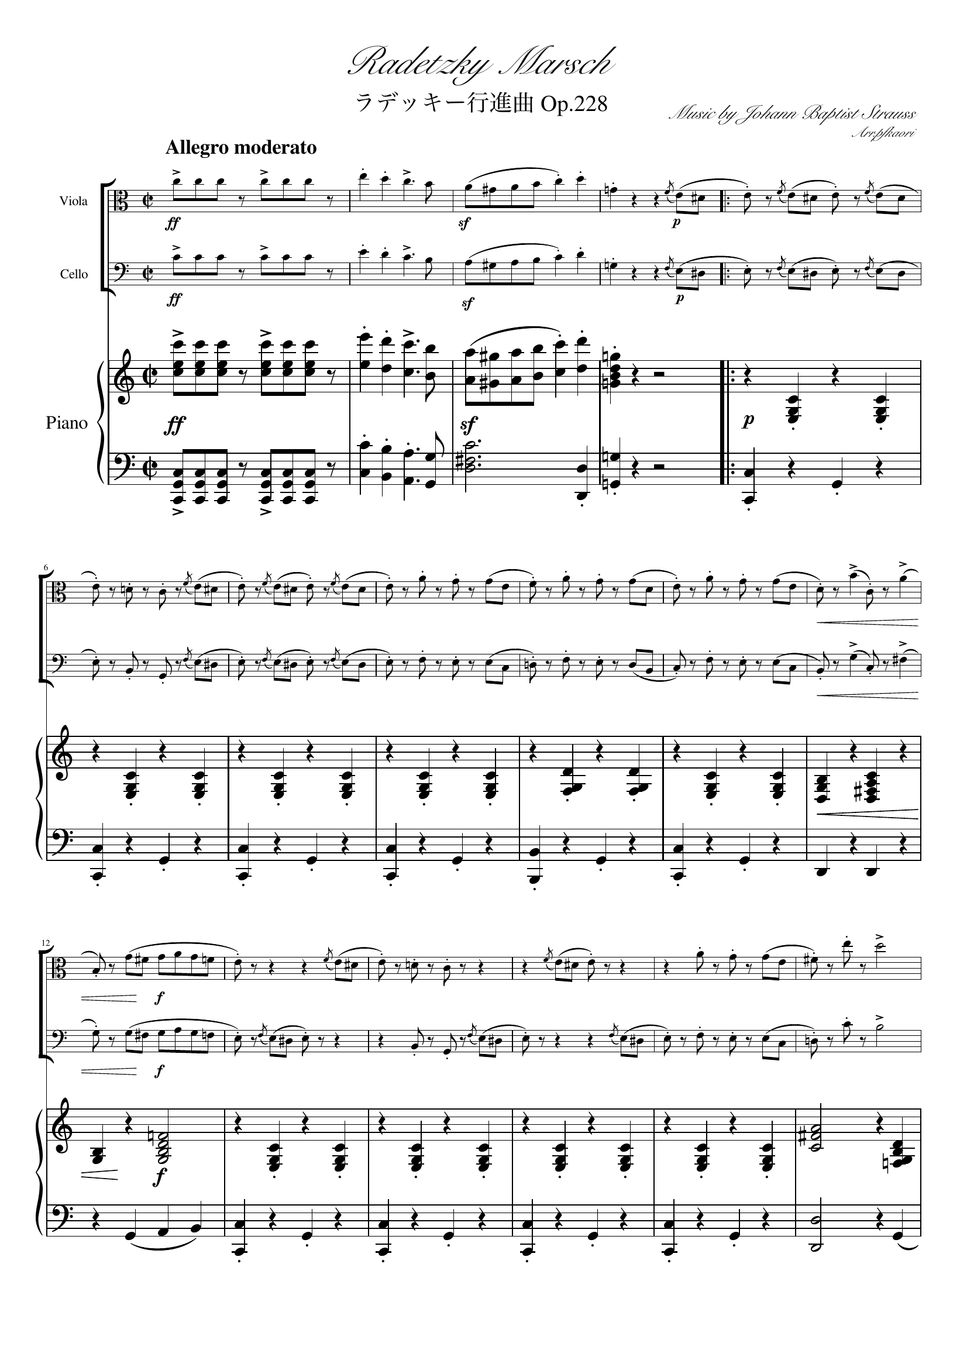 ヨハンシュトラウス1世 - ラデッキー行進曲 (C・ピアノトリオ/ヴィオラ&チェロ) by pfkaori